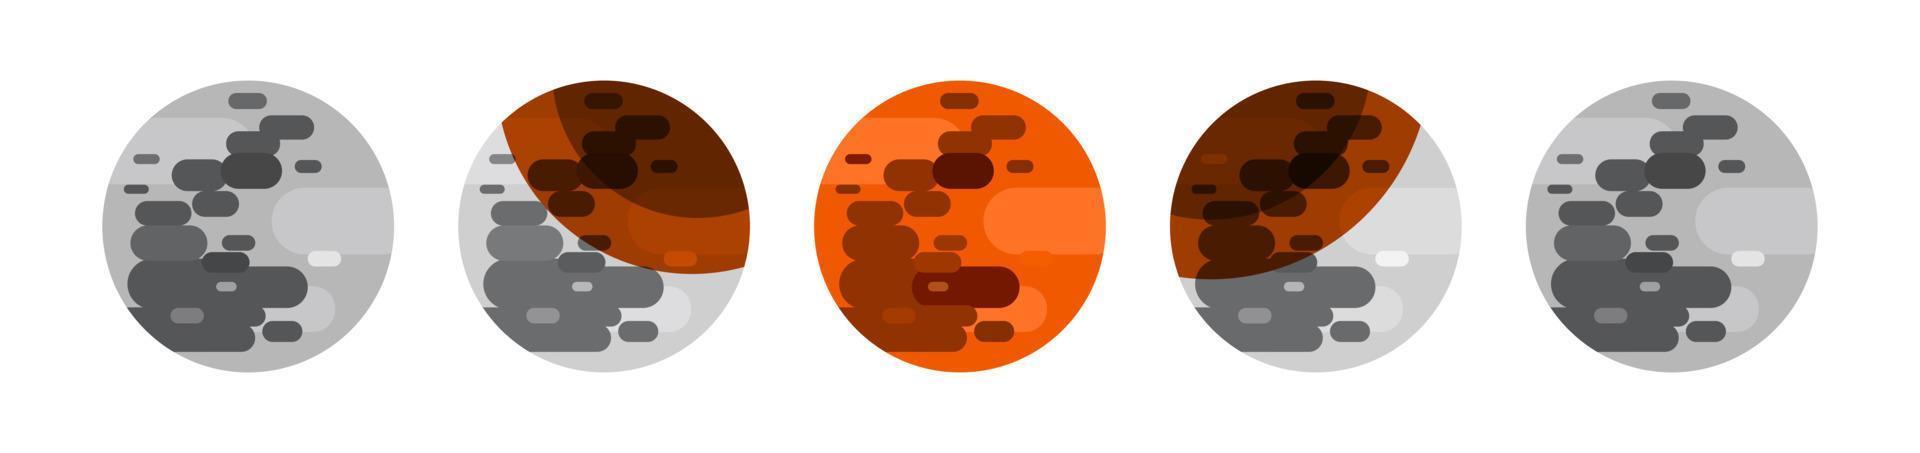 éclipse lunaire jeu d'icônes plates phase d'éclipse éclipse partielle et totale vecteur astronomie science illustration